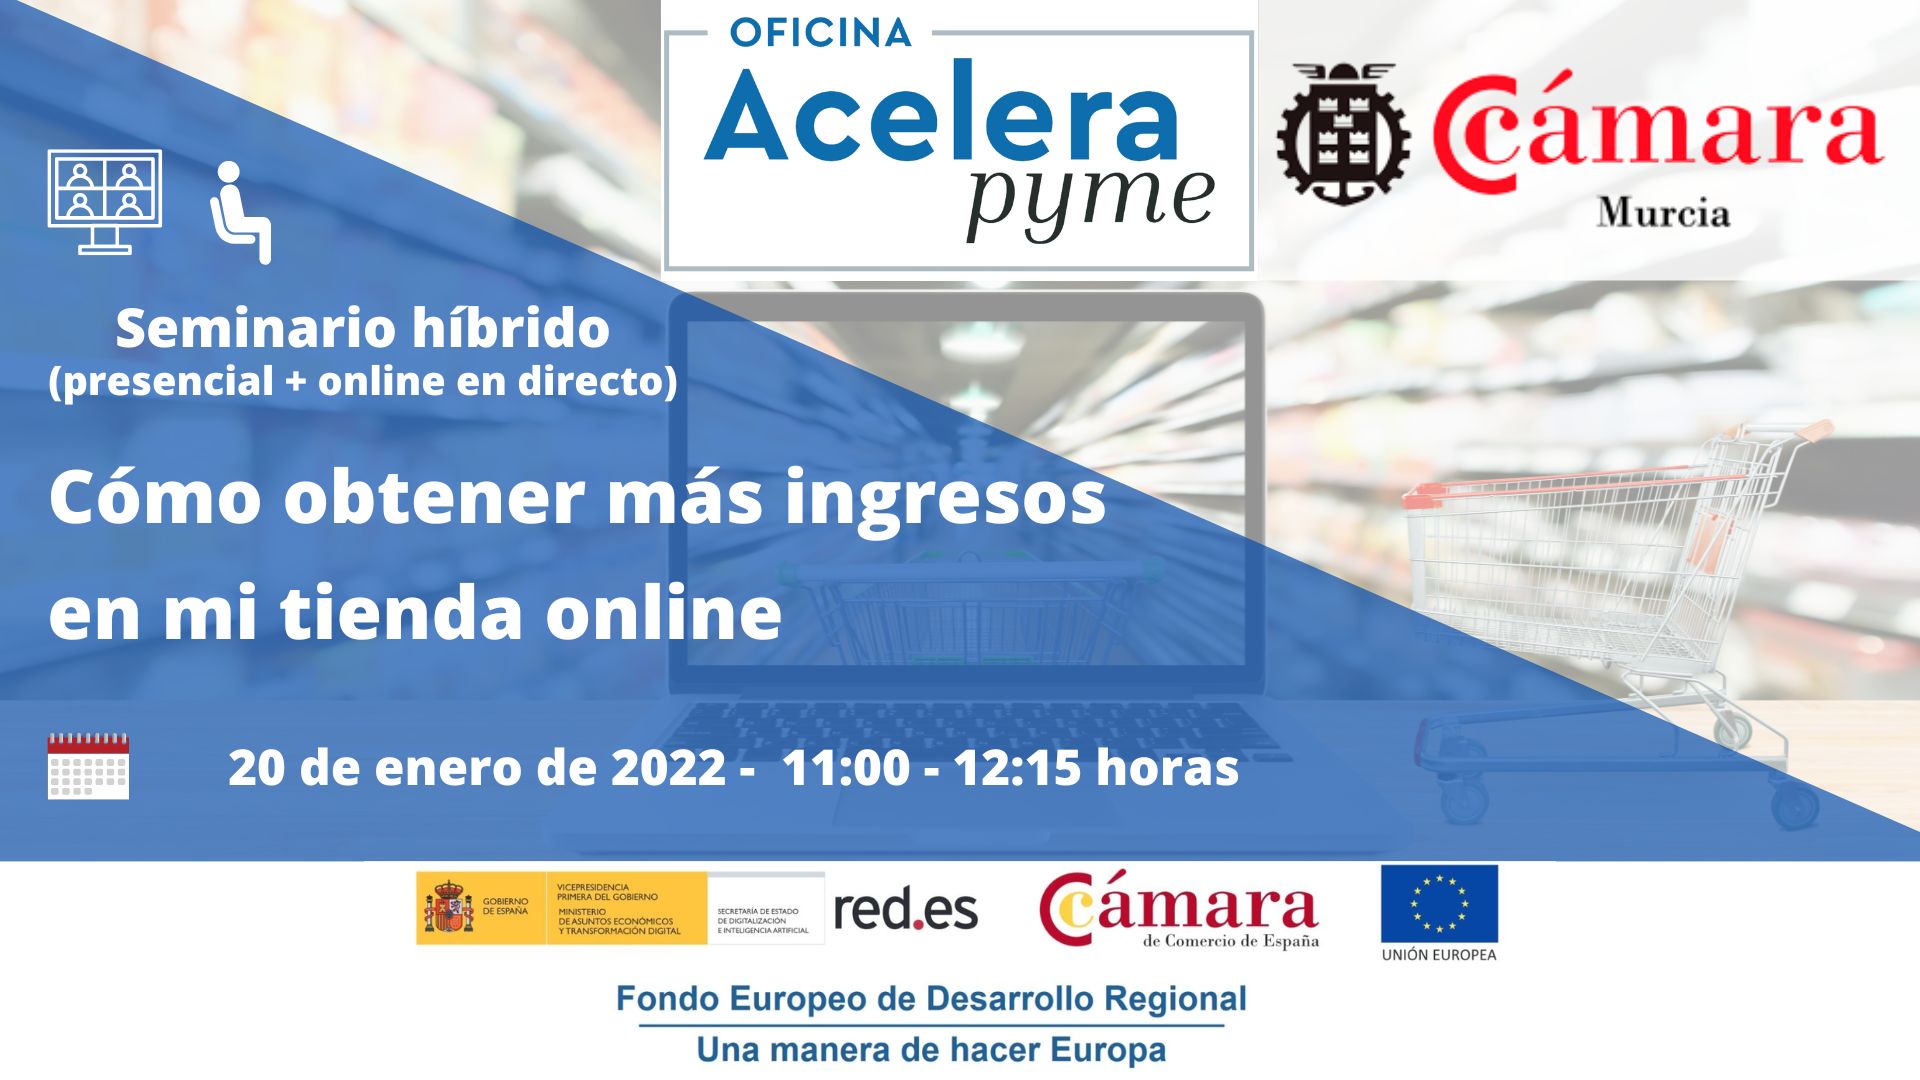 seminario-webinar | Cómo obtener más ingresos en mi tienda online | Oficina Acelera Pyme | Cámara de Comercio de Murcia